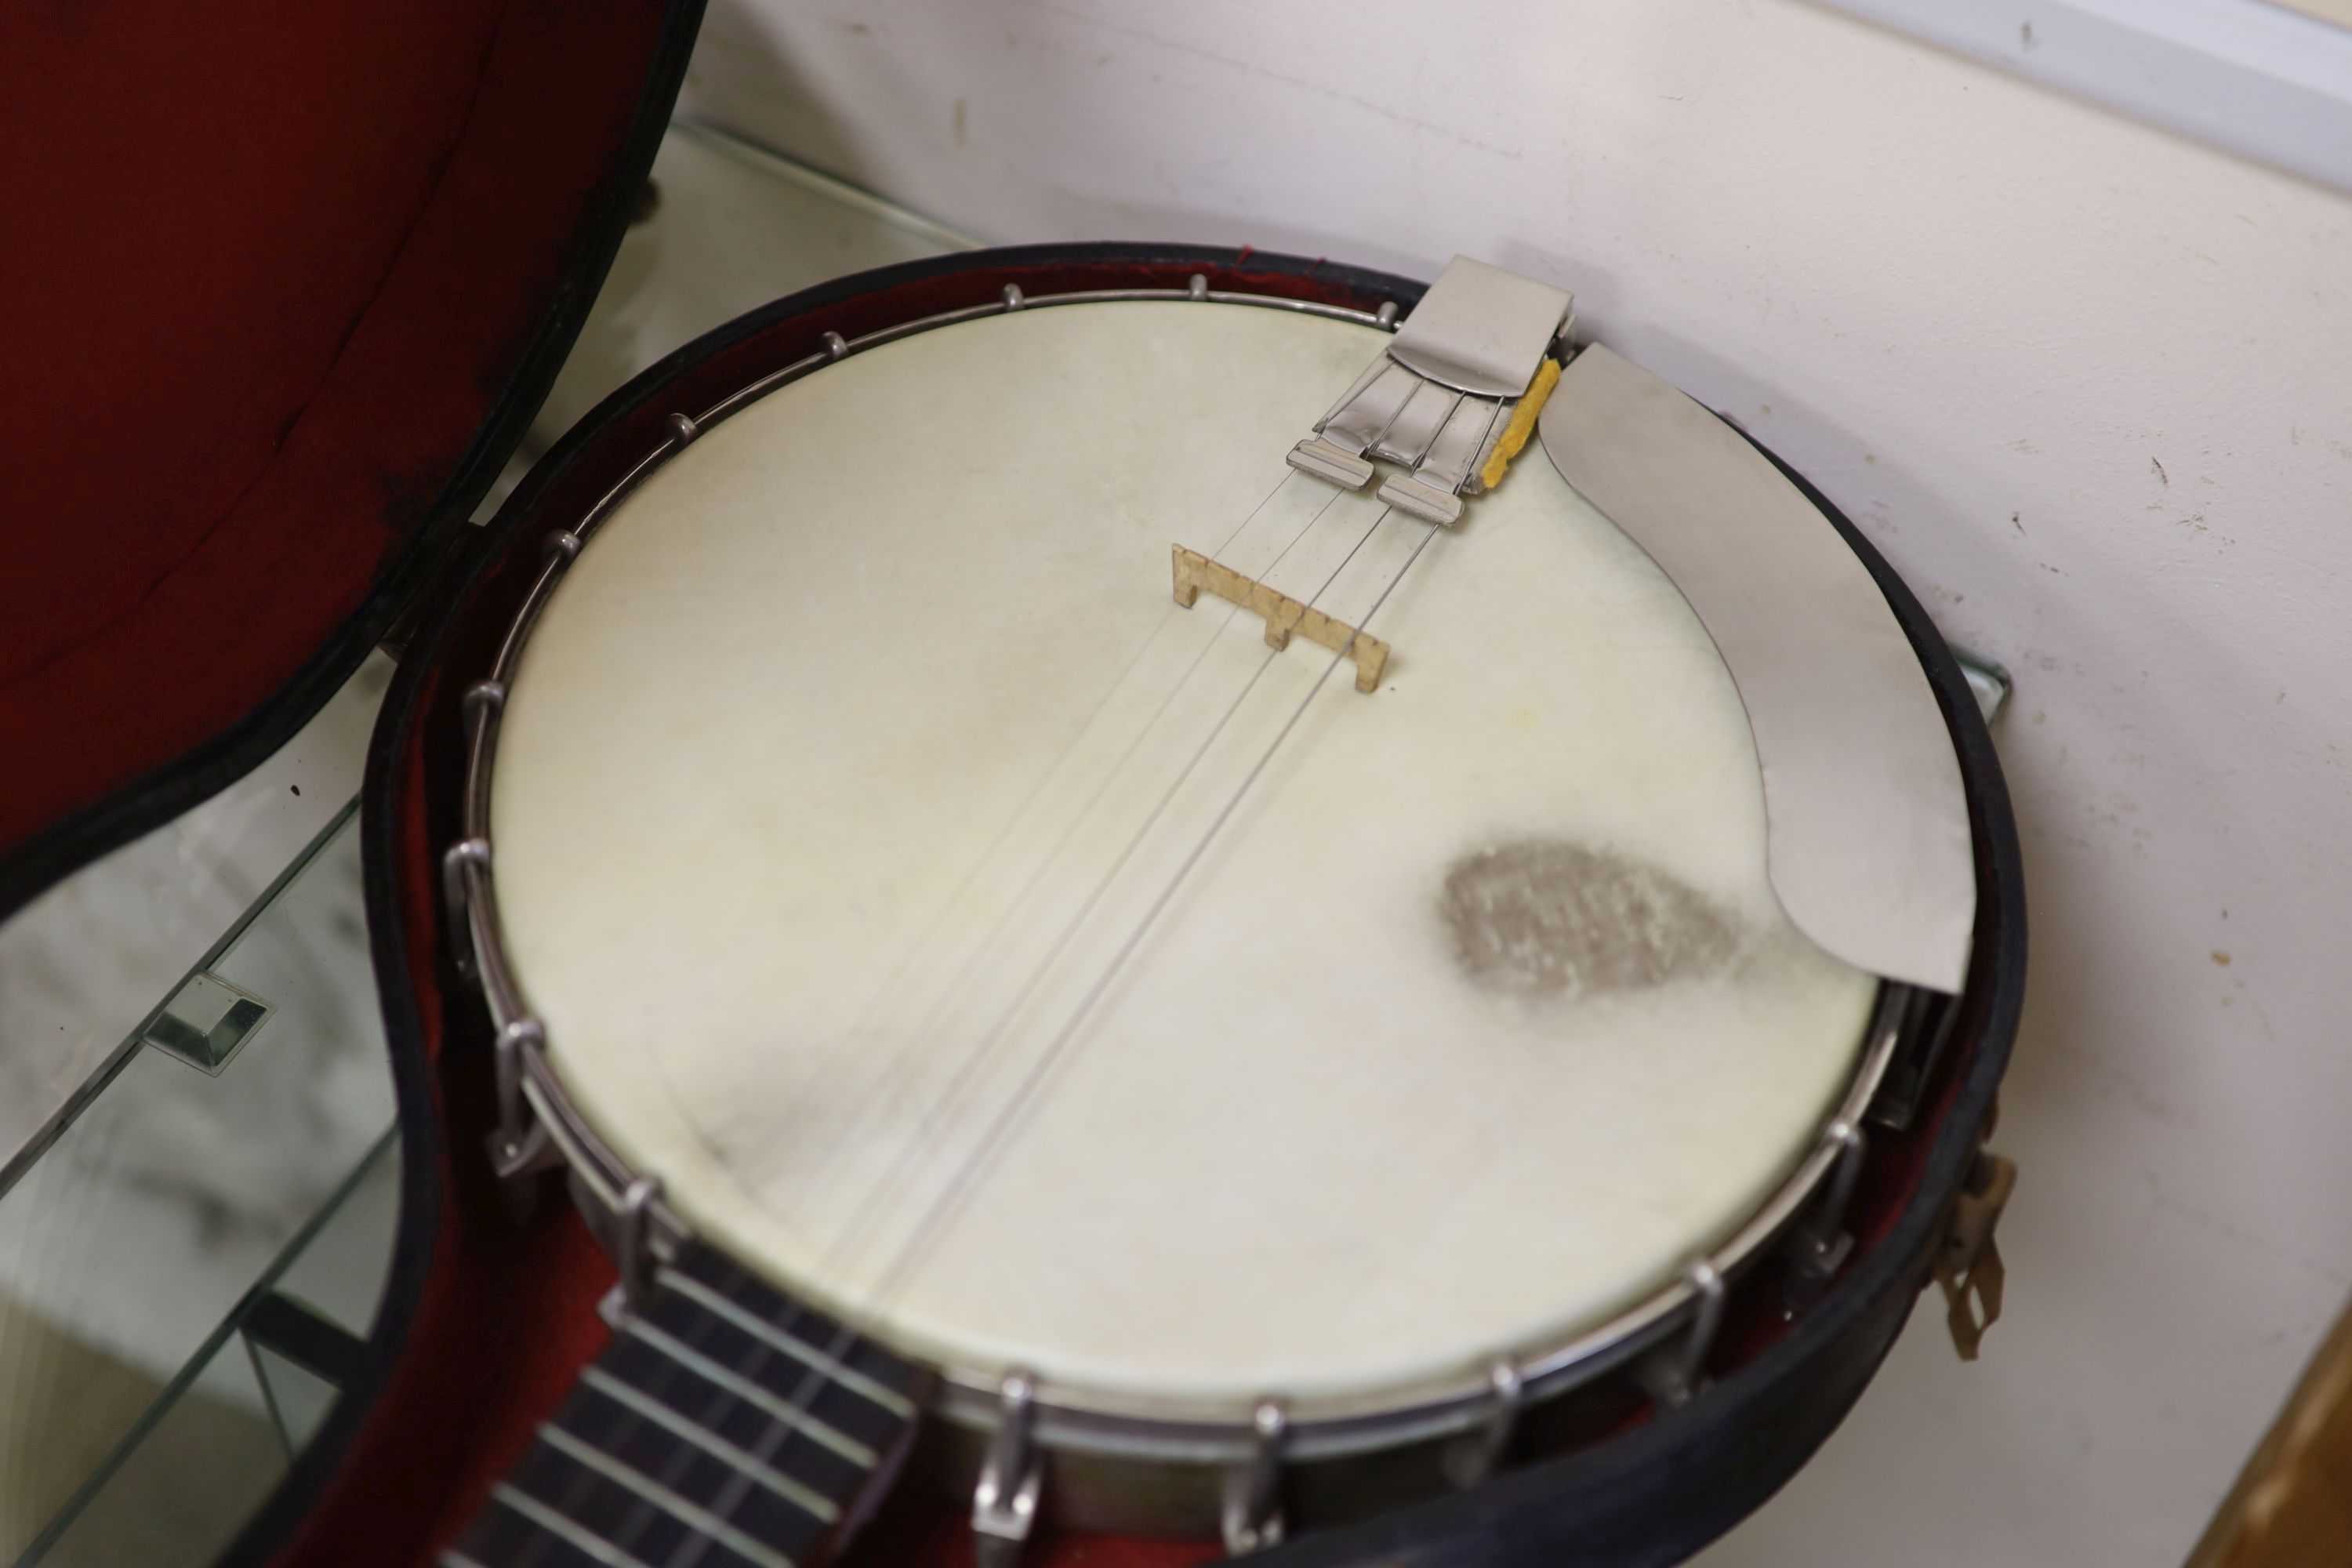 A Windsor popular 4 string banjo, cased